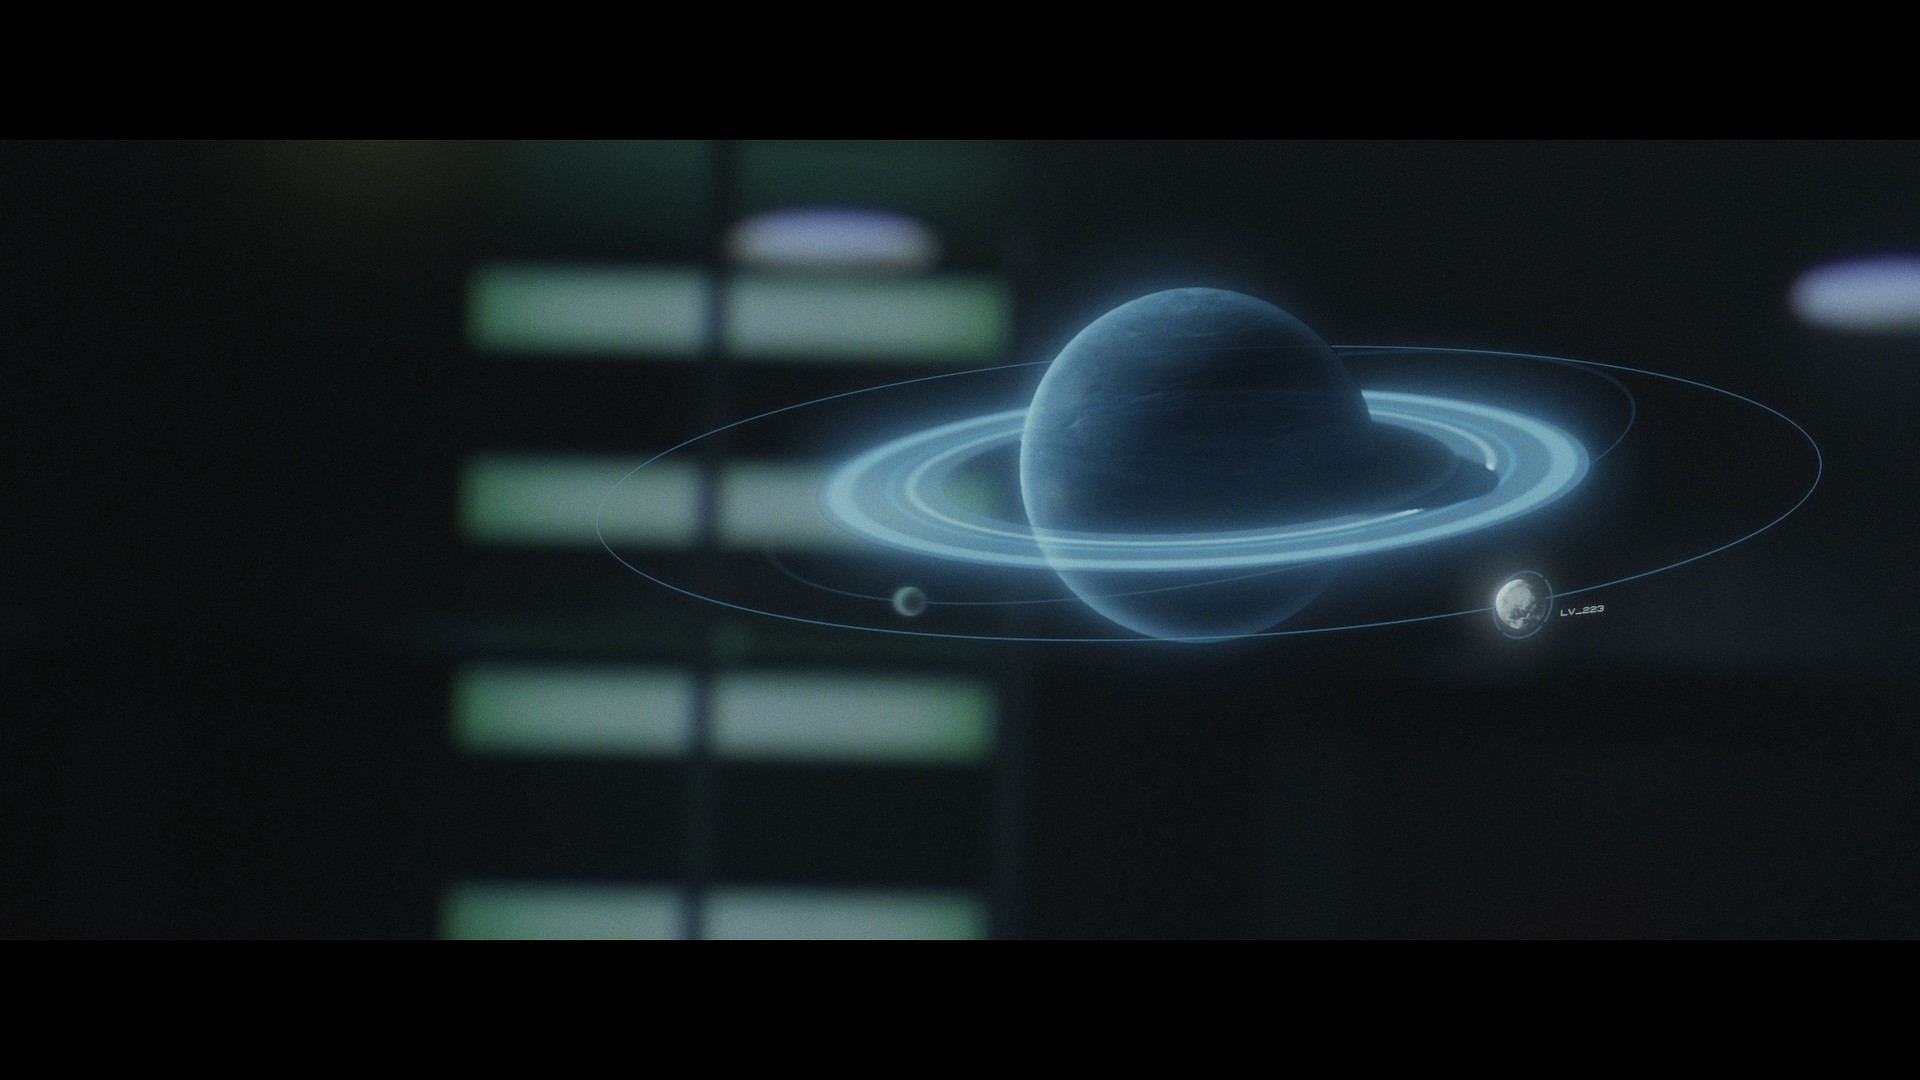 [普罗米修斯].Prometheus.2012.3D.GER.BluRay.1080p.AVC.DTS-HD.MA.7.1-BluHD    45.95G-4.jpg